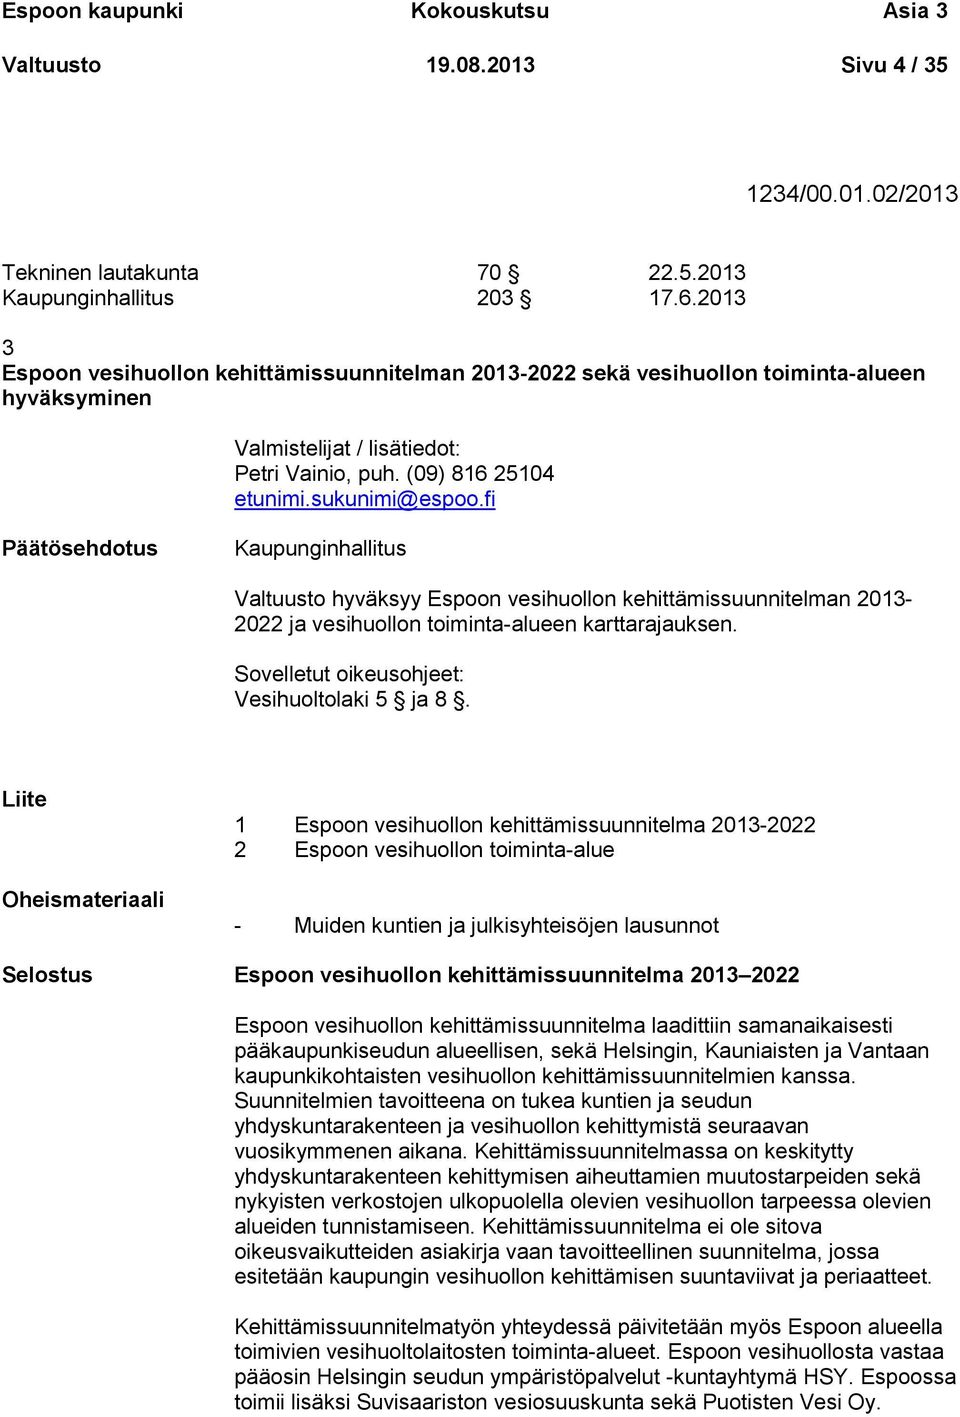 fi Päätösehdotus Kaupunginhallitus Valtuusto hyväksyy Espoon vesihuollon kehittämissuunnitelman 2013-2022 ja vesihuollon toiminta-alueen karttarajauksen.